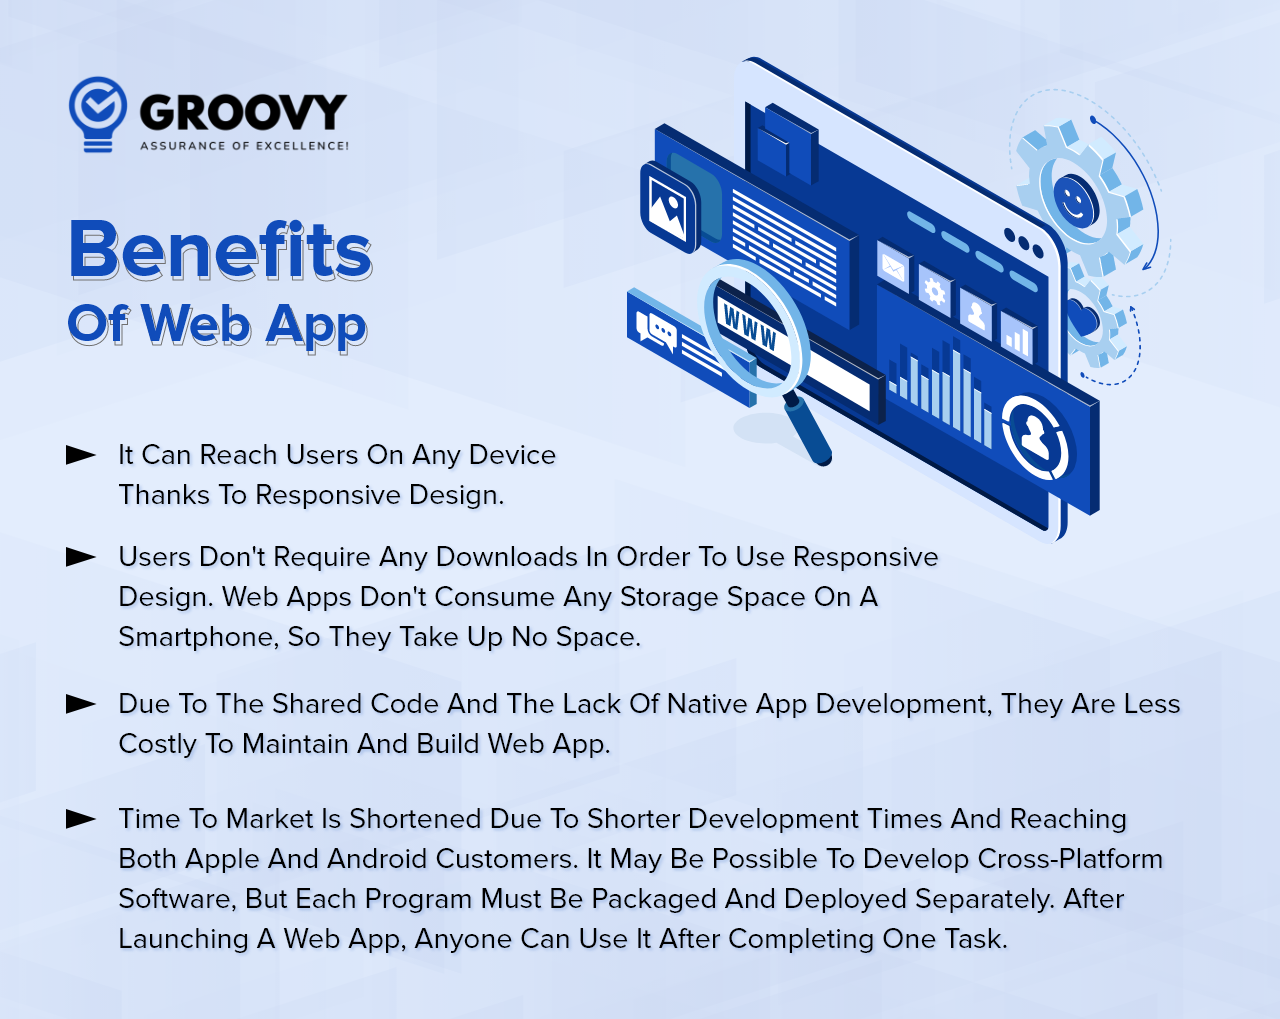 Benefits Of A Web App